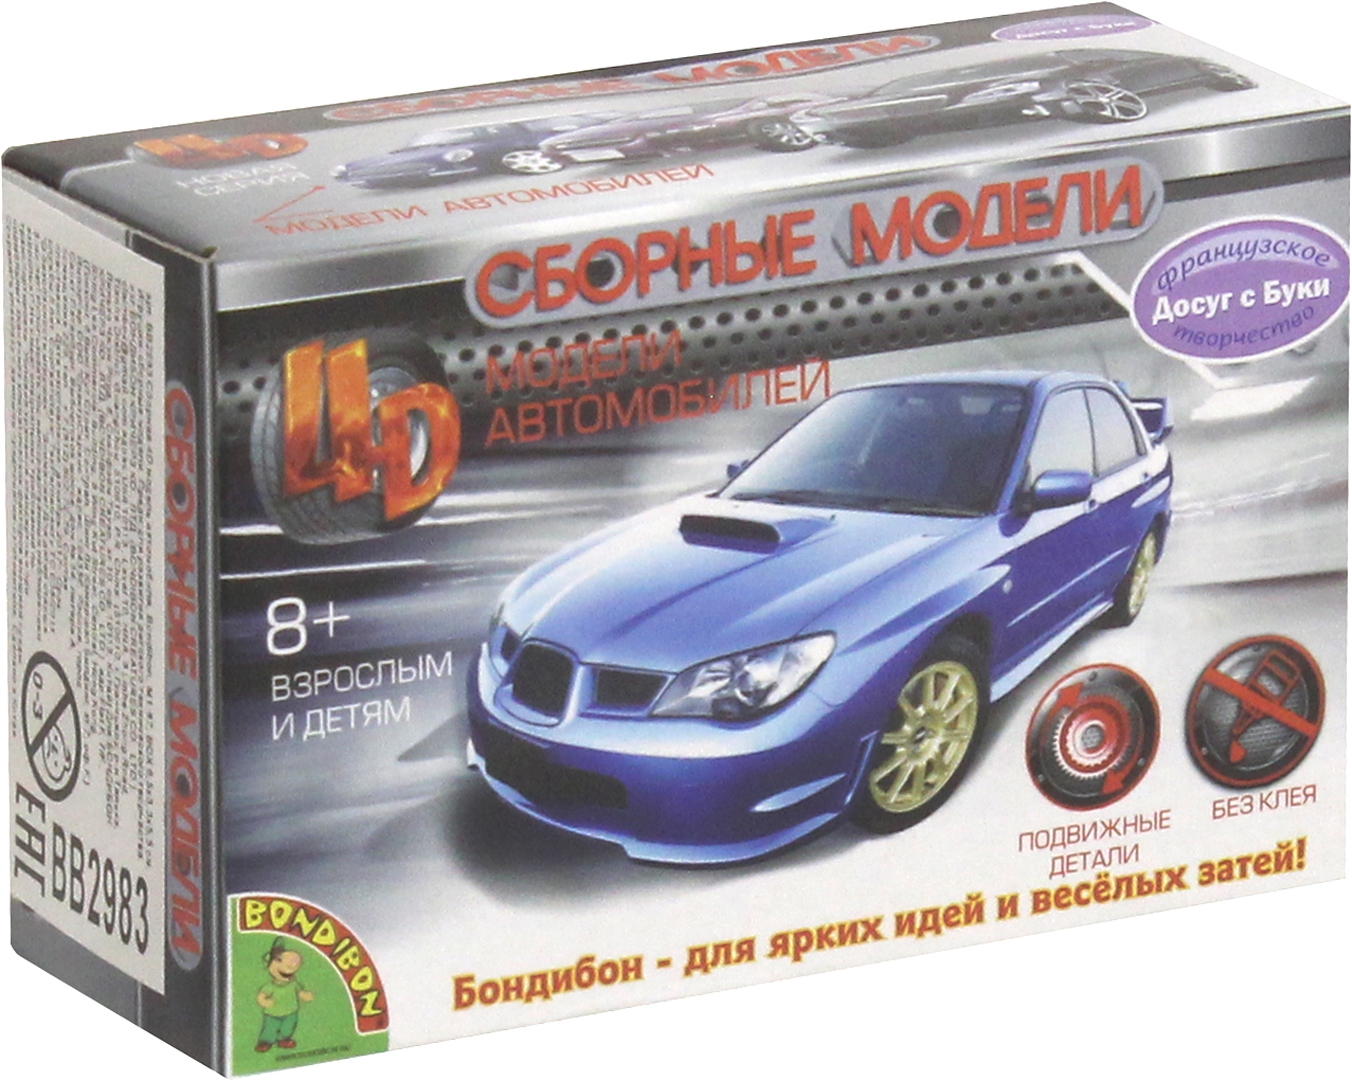 Иллюстрация 1 из 4 для Сборная 4D модель автомобиля, Bondibon (ВВ2983) | Лабиринт - игрушки. Источник: Лабиринт